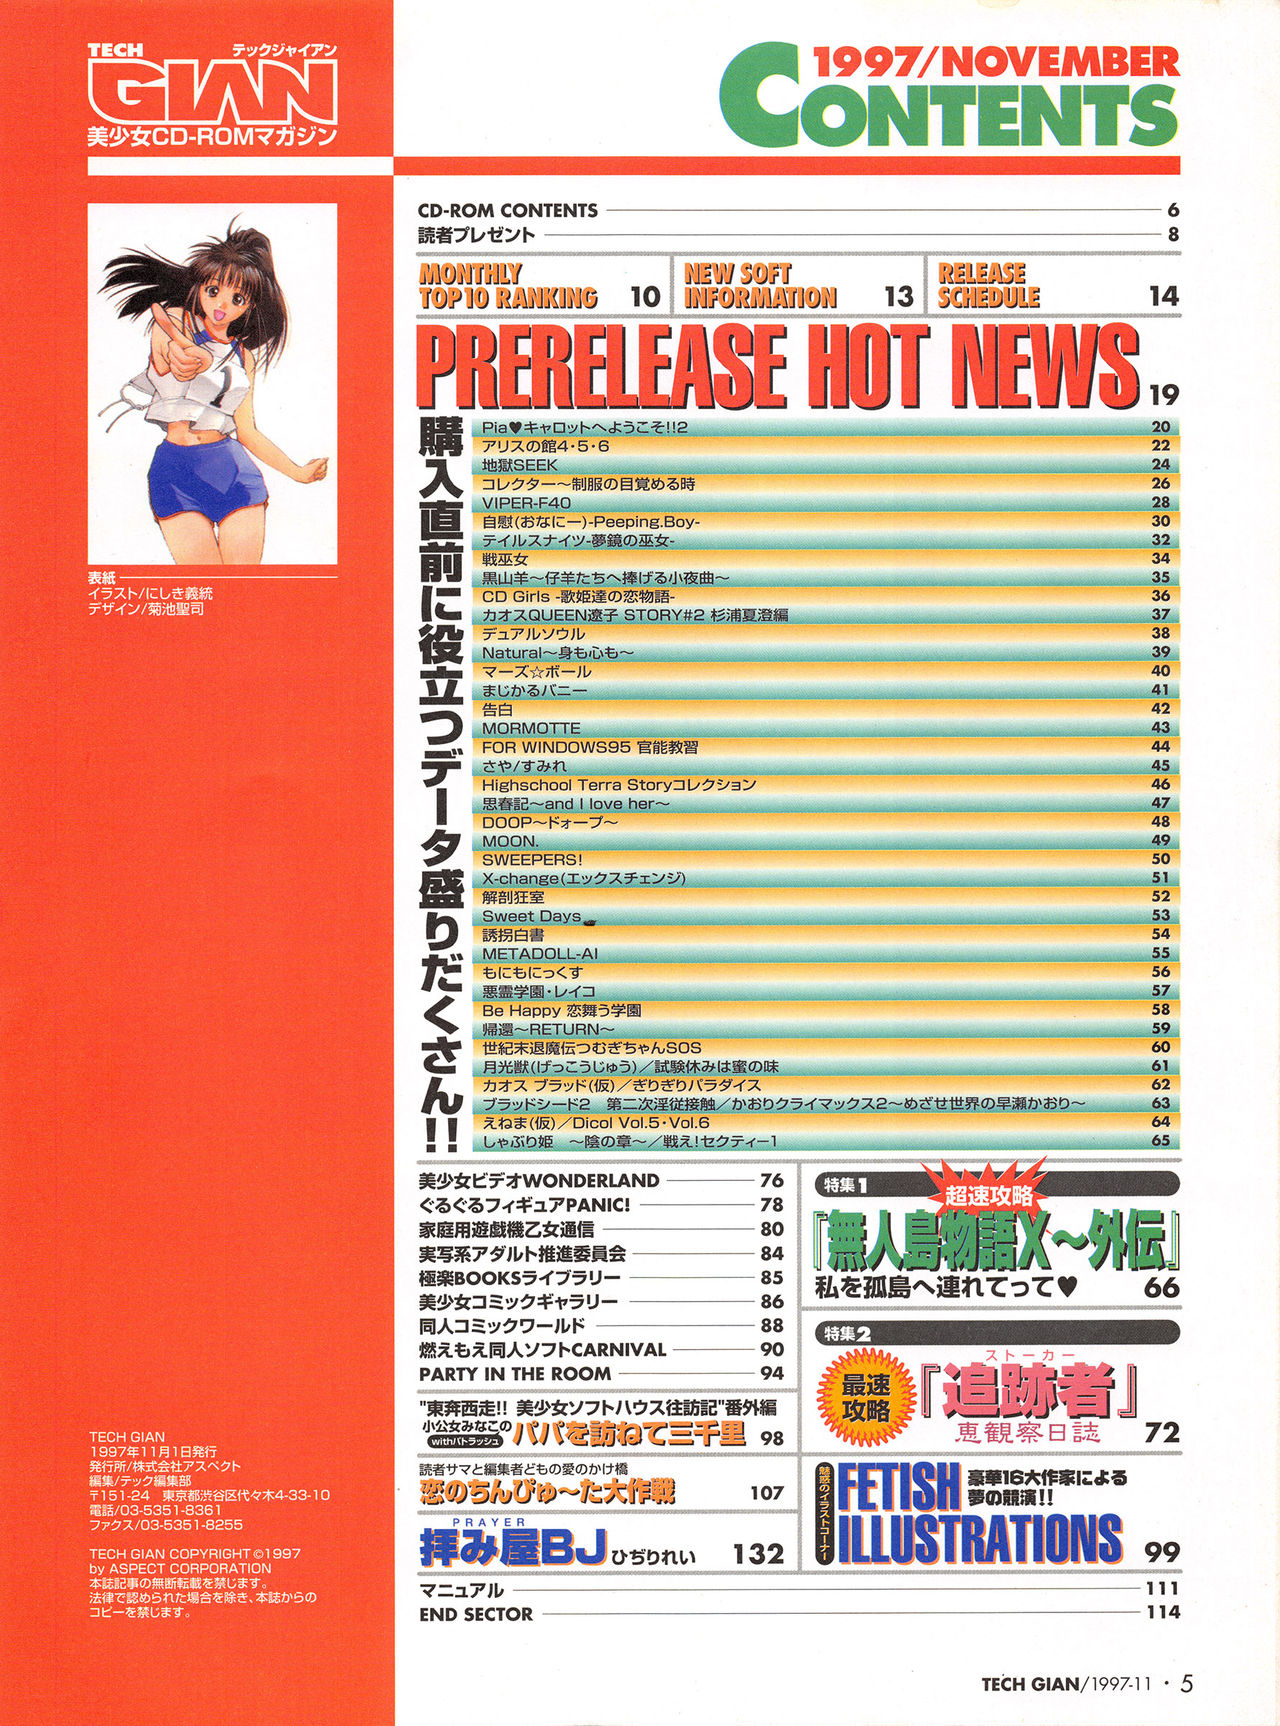 Tech Gian Issue 13 (November 1997) 